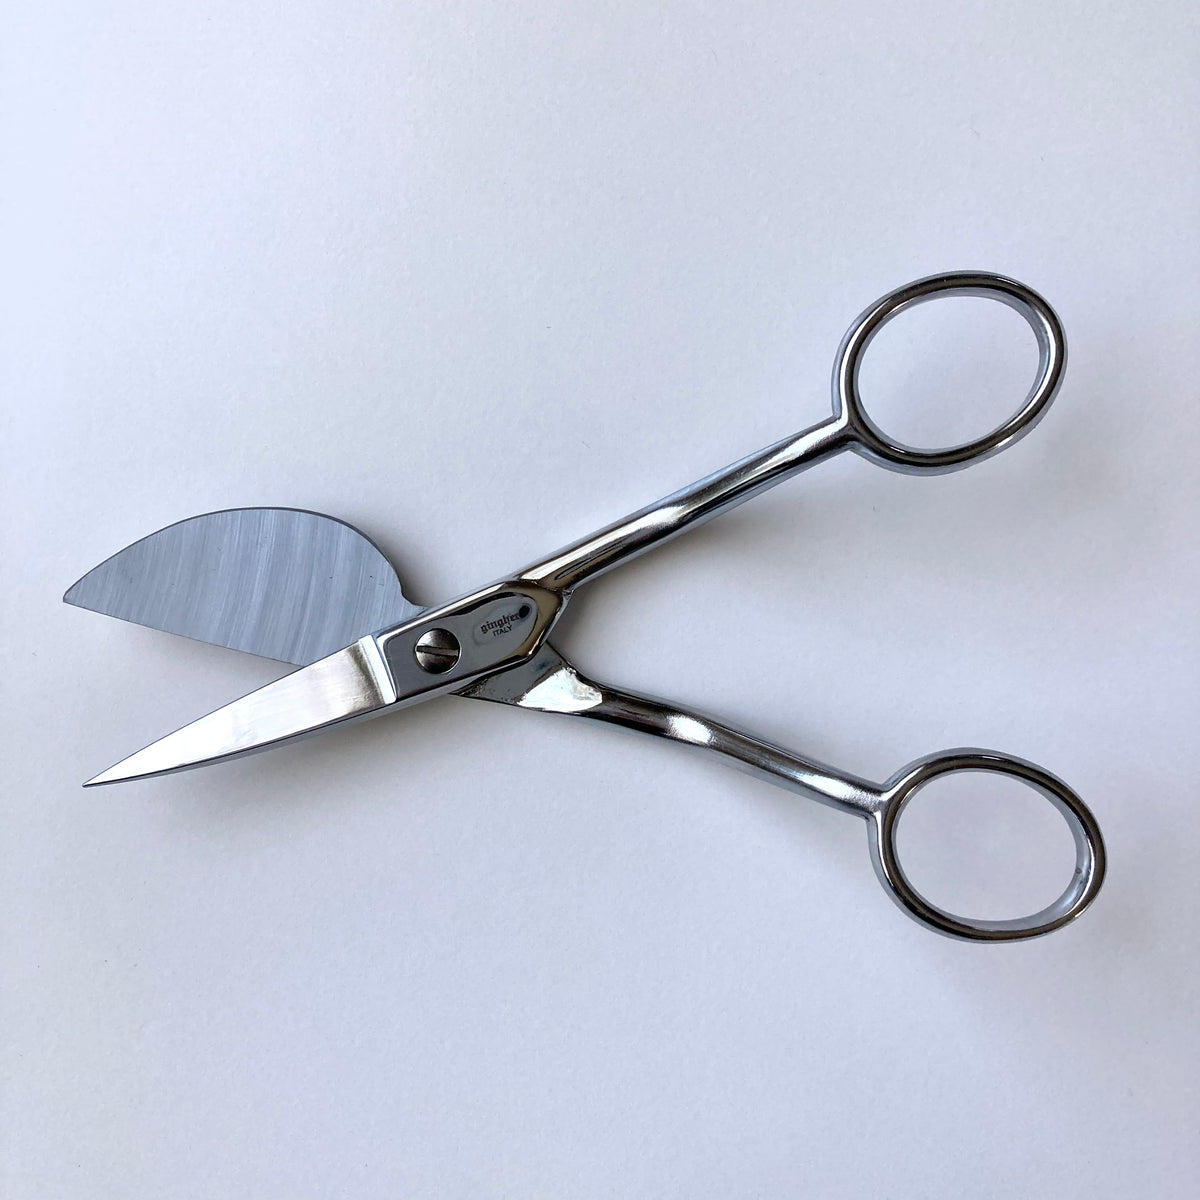 Gingher Duckbill 6 Applique Scissors